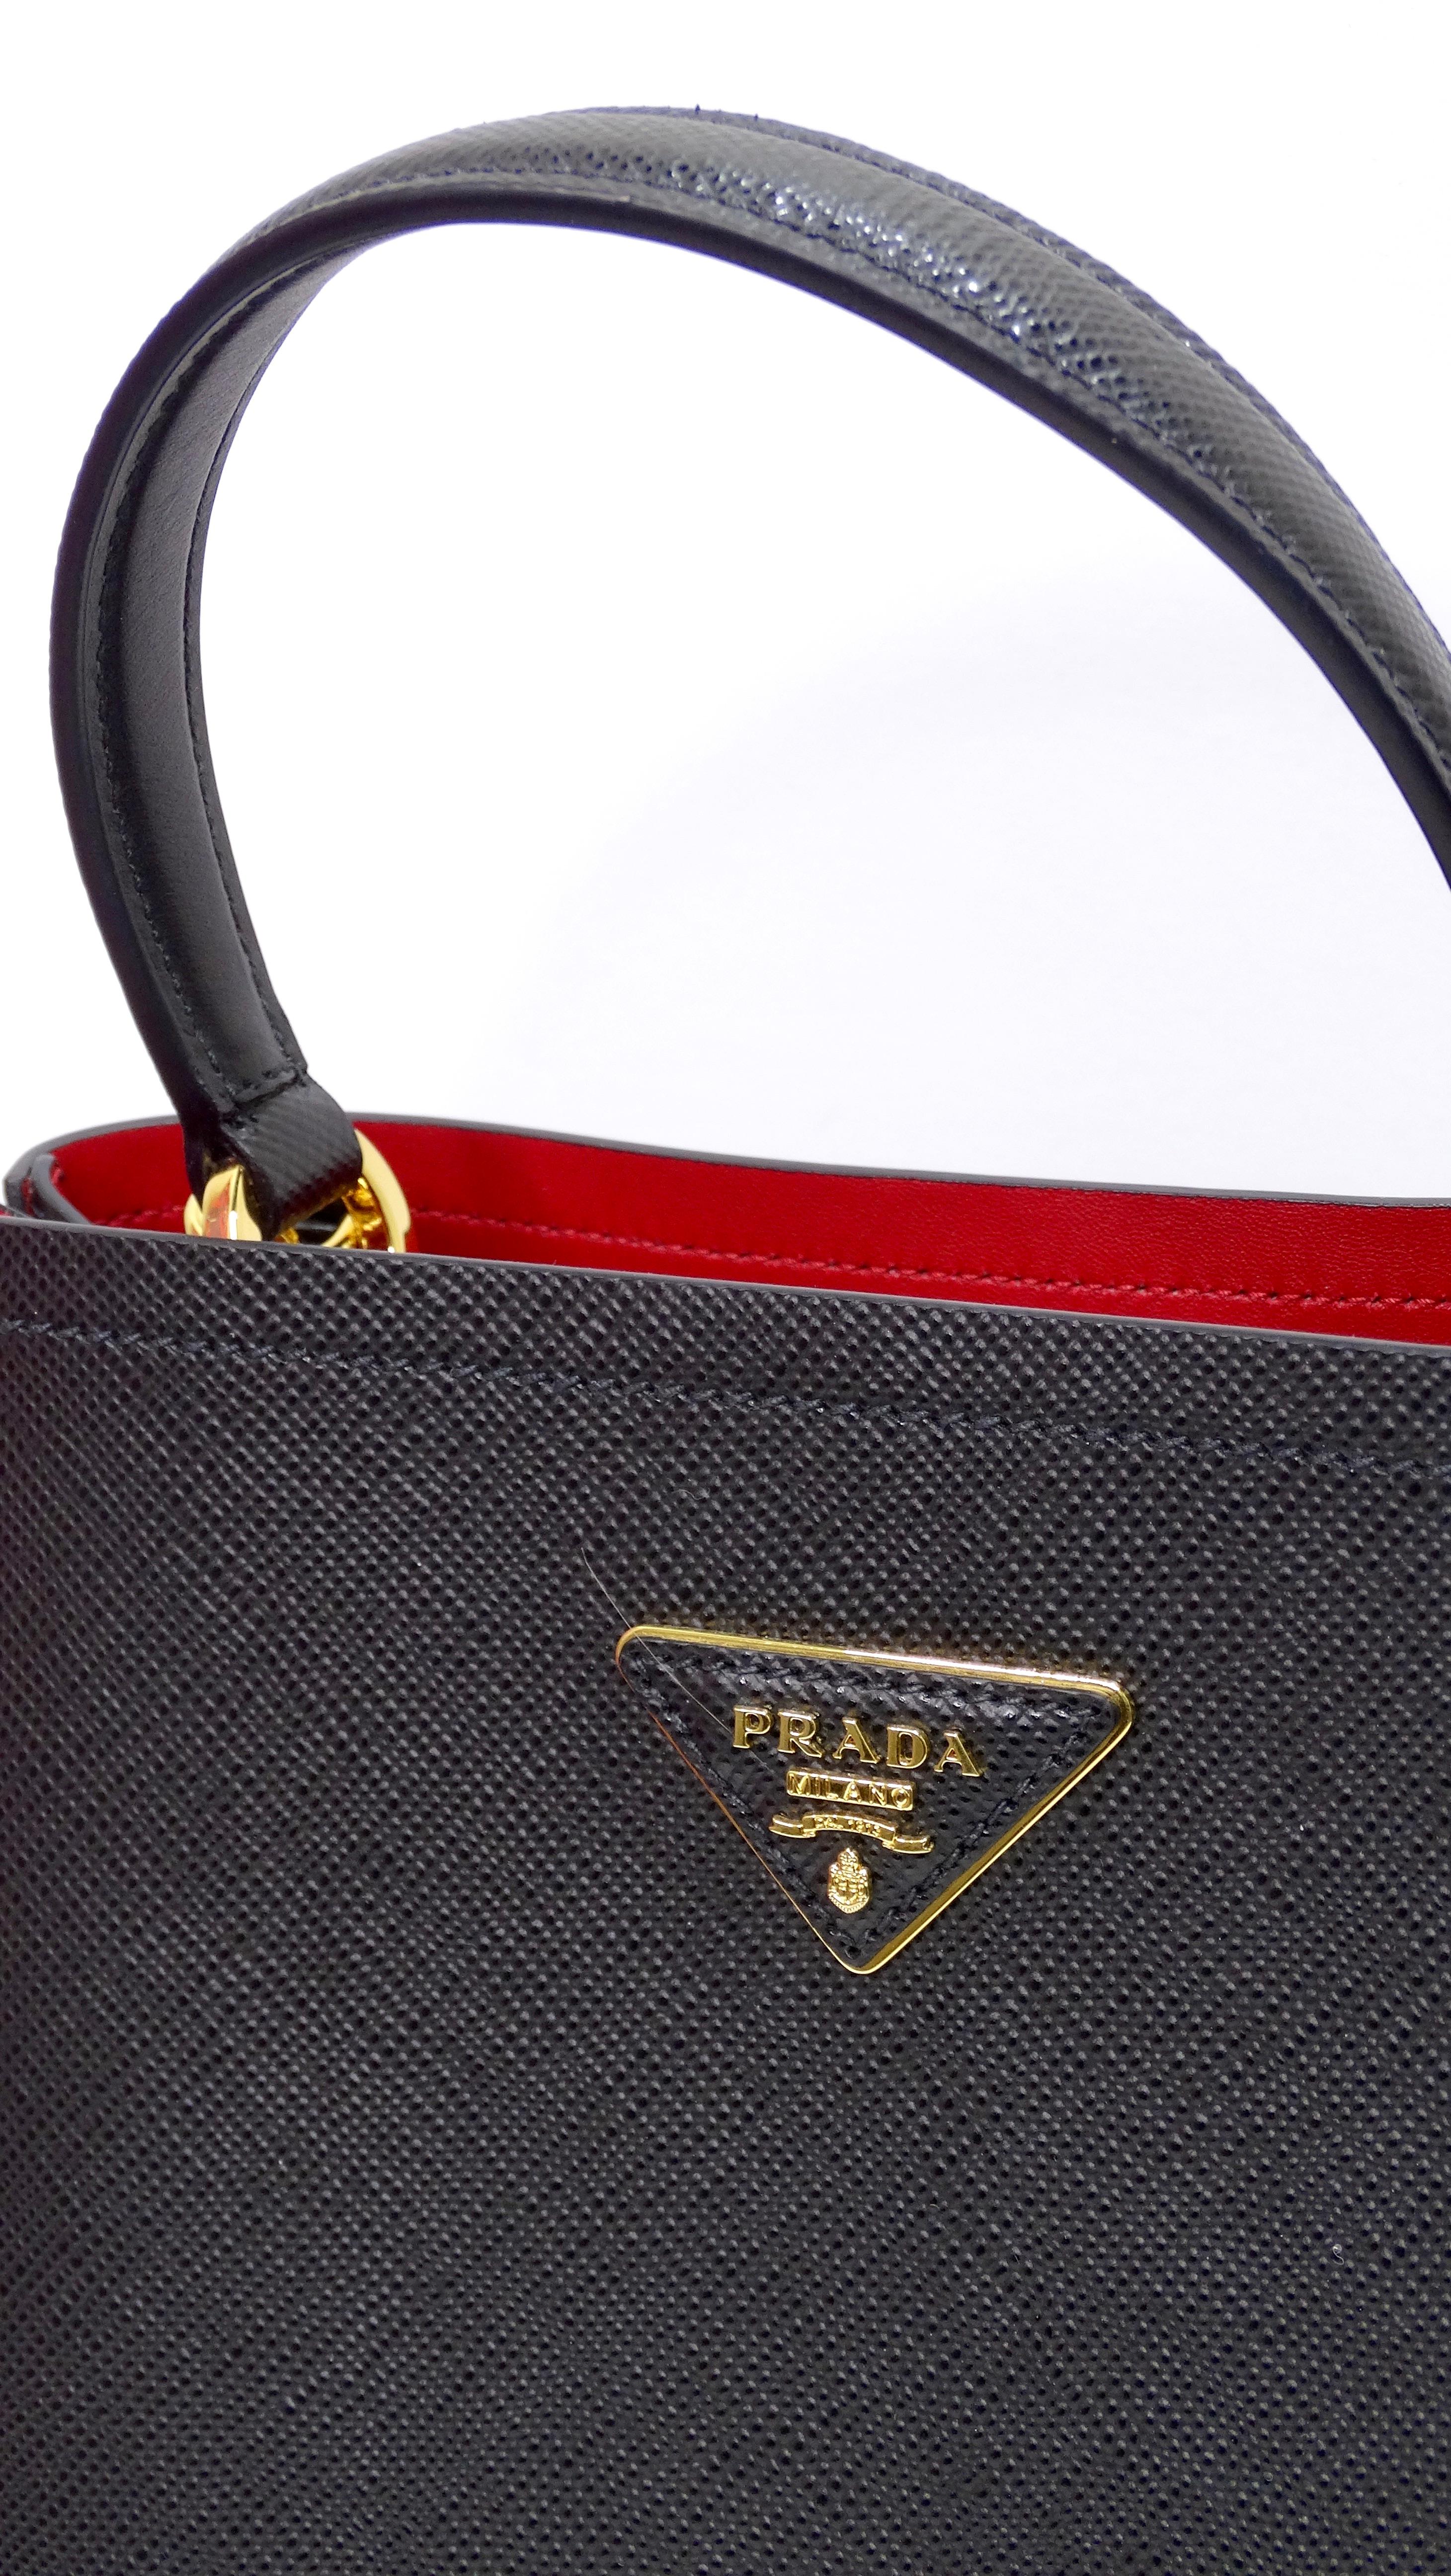 Black Prada Medium Saffiano Leather Prada Bag